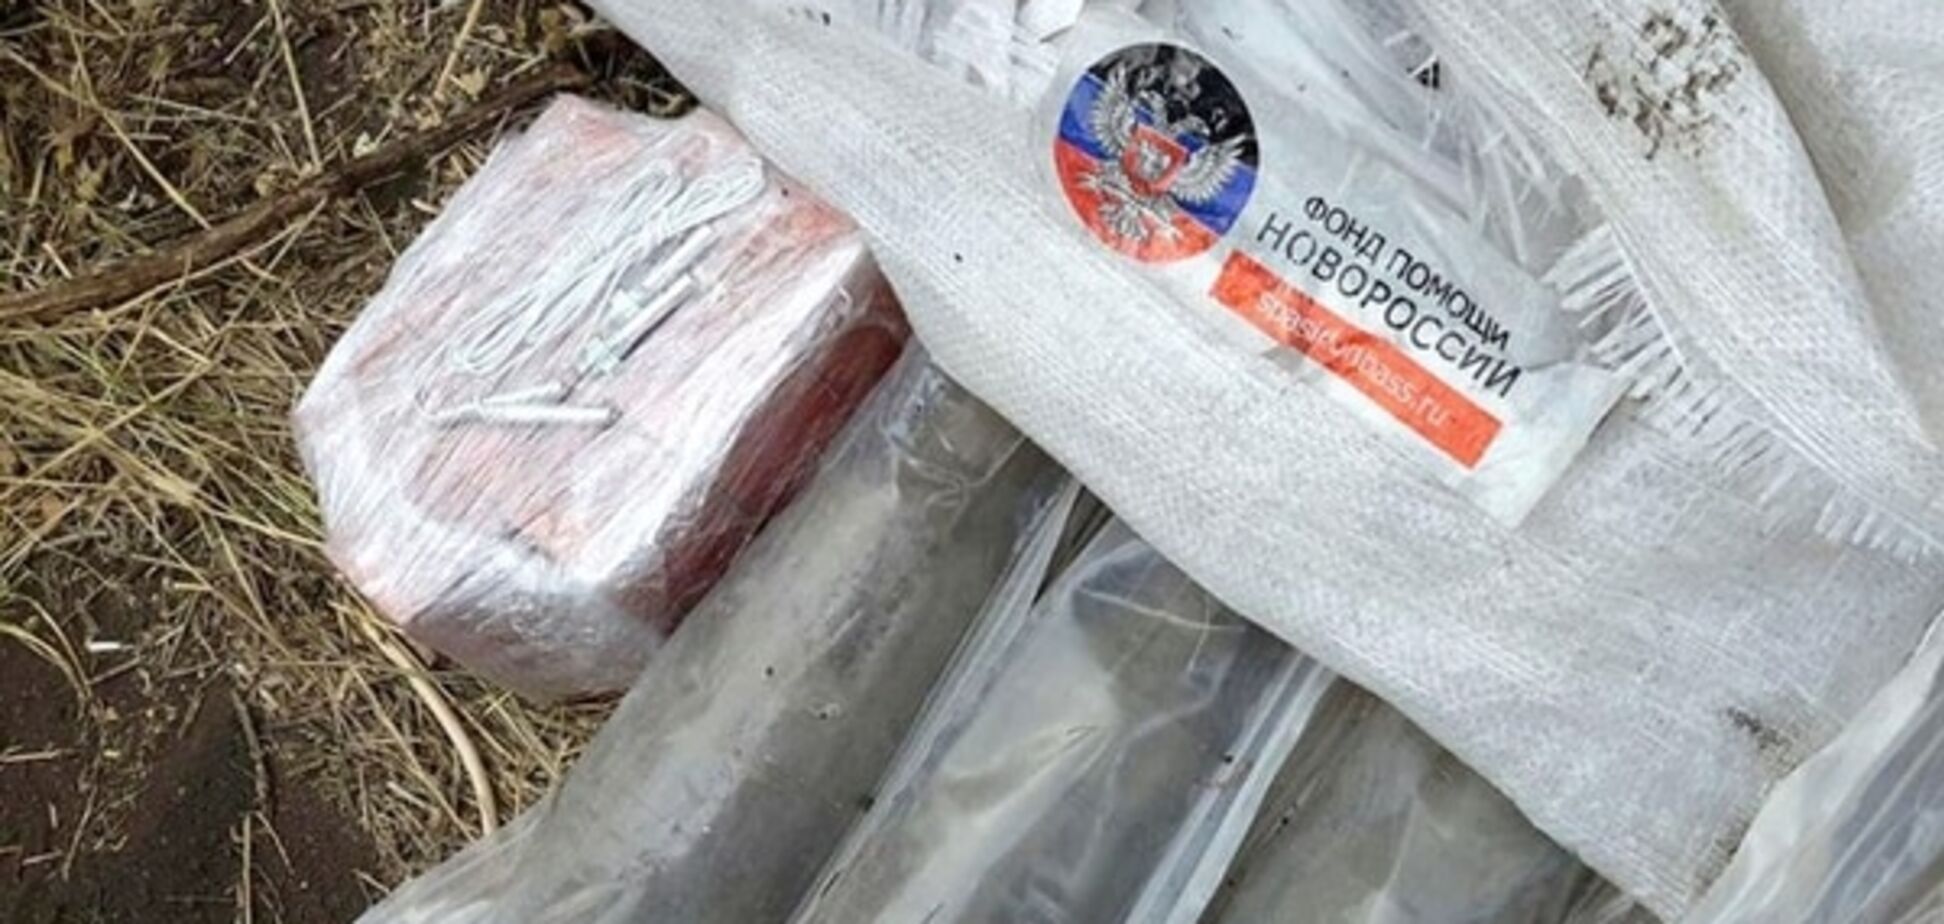 Под Мариуполем нашли взрывчатку в мешках из-под российской 'гуманитарки': фотофакт